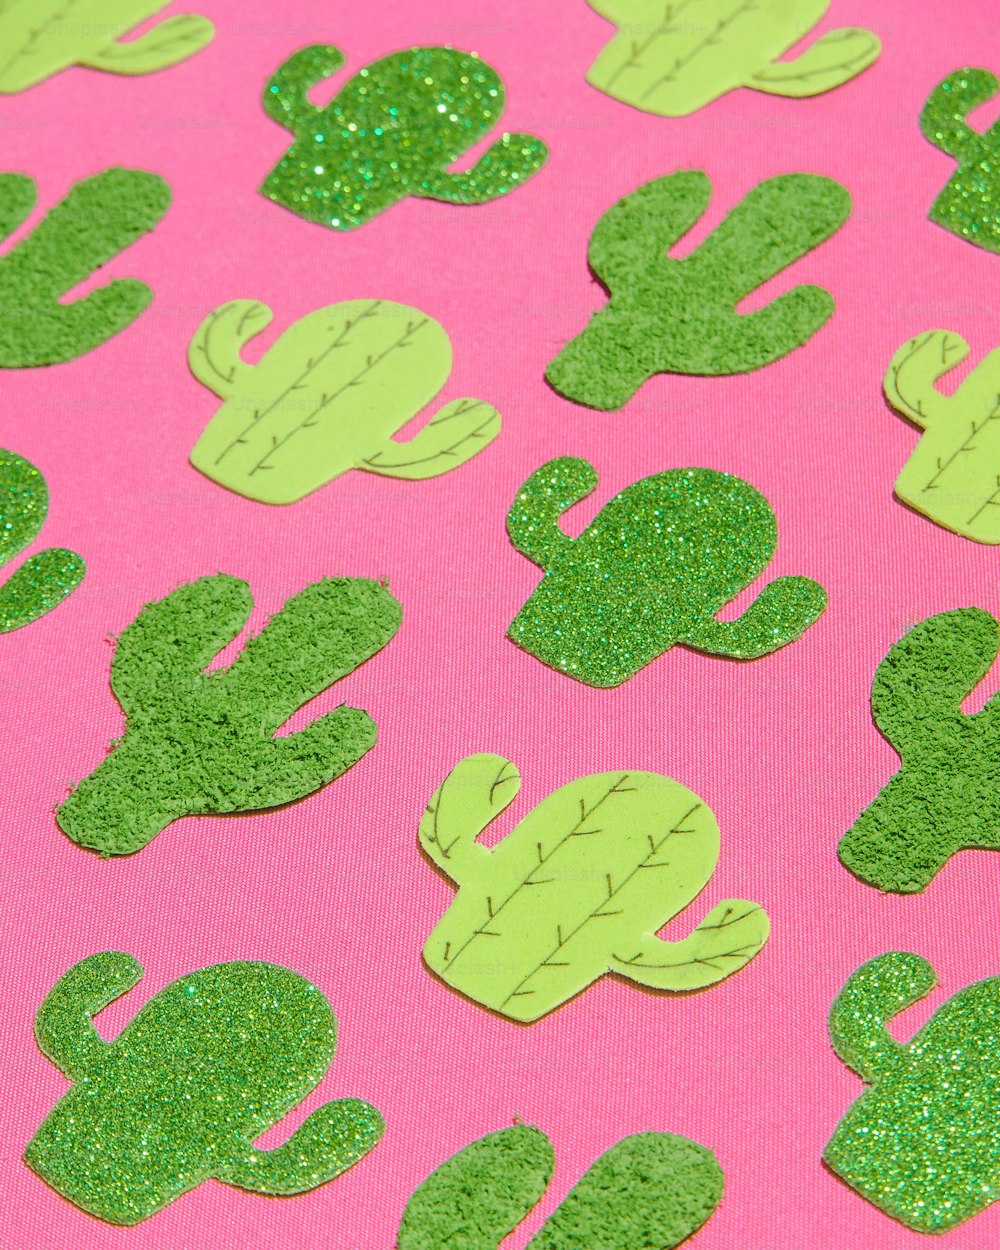 uno sfondo rosa con forme di cactus glitterate verdi